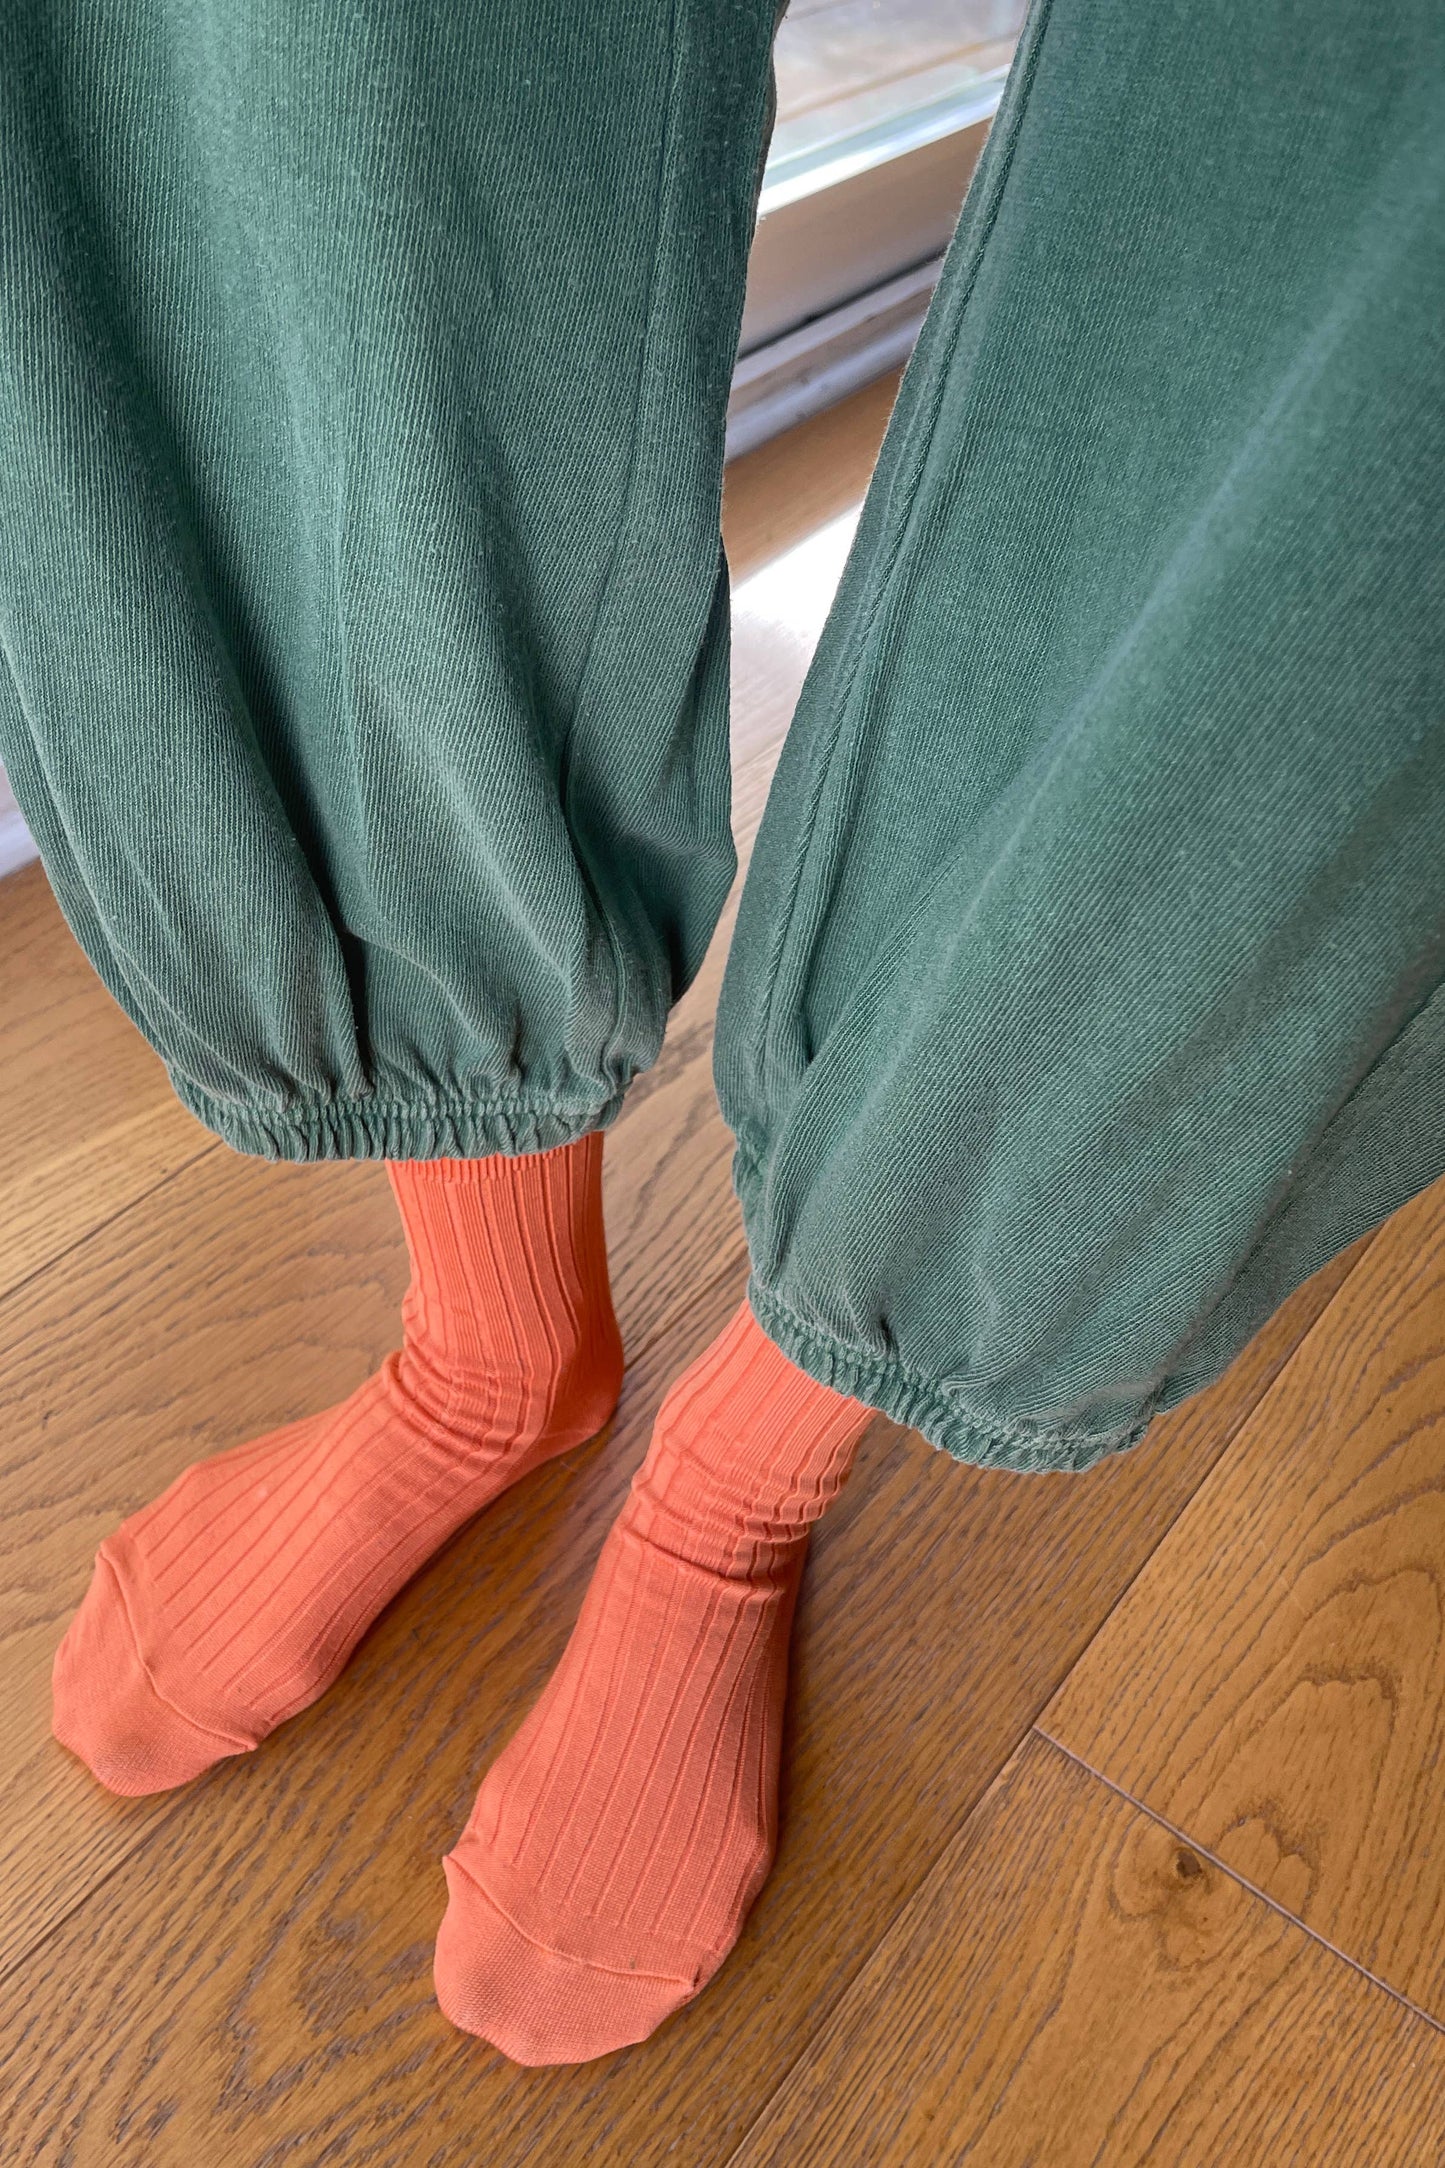 LE BON SHOPPE | Her Socks - Mercerized Combed Cotton Rib: Desert Rose